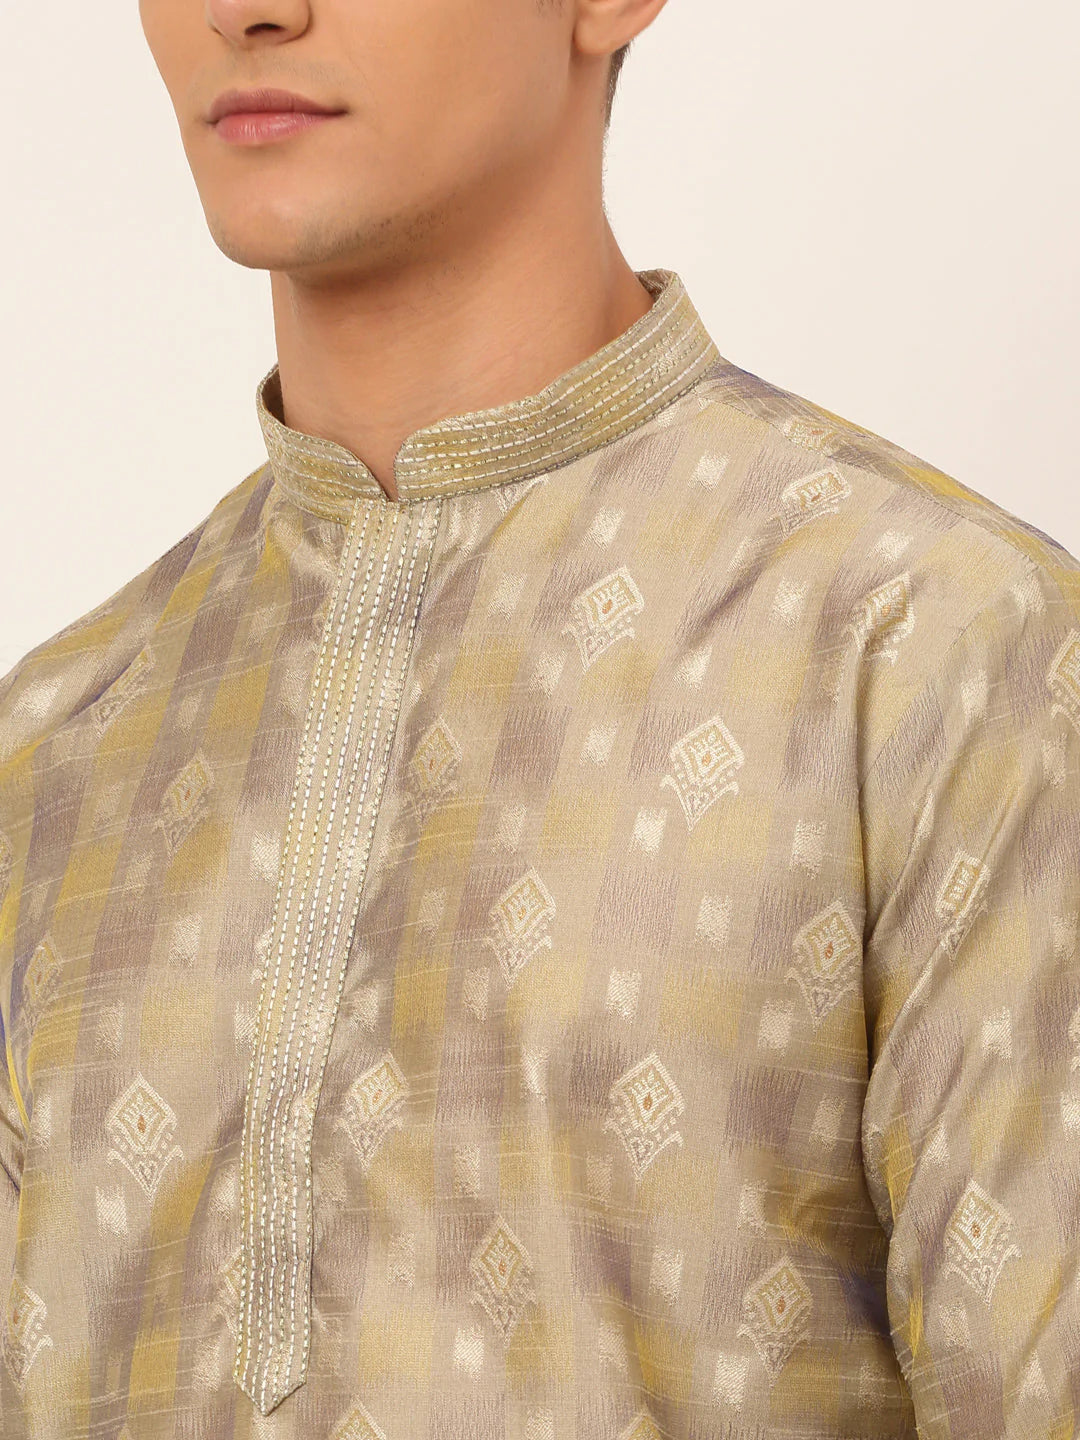 Jompers Men's Beige Collar Embroidered Woven Design Kurta Pajama ( JOKP 672 Beige )